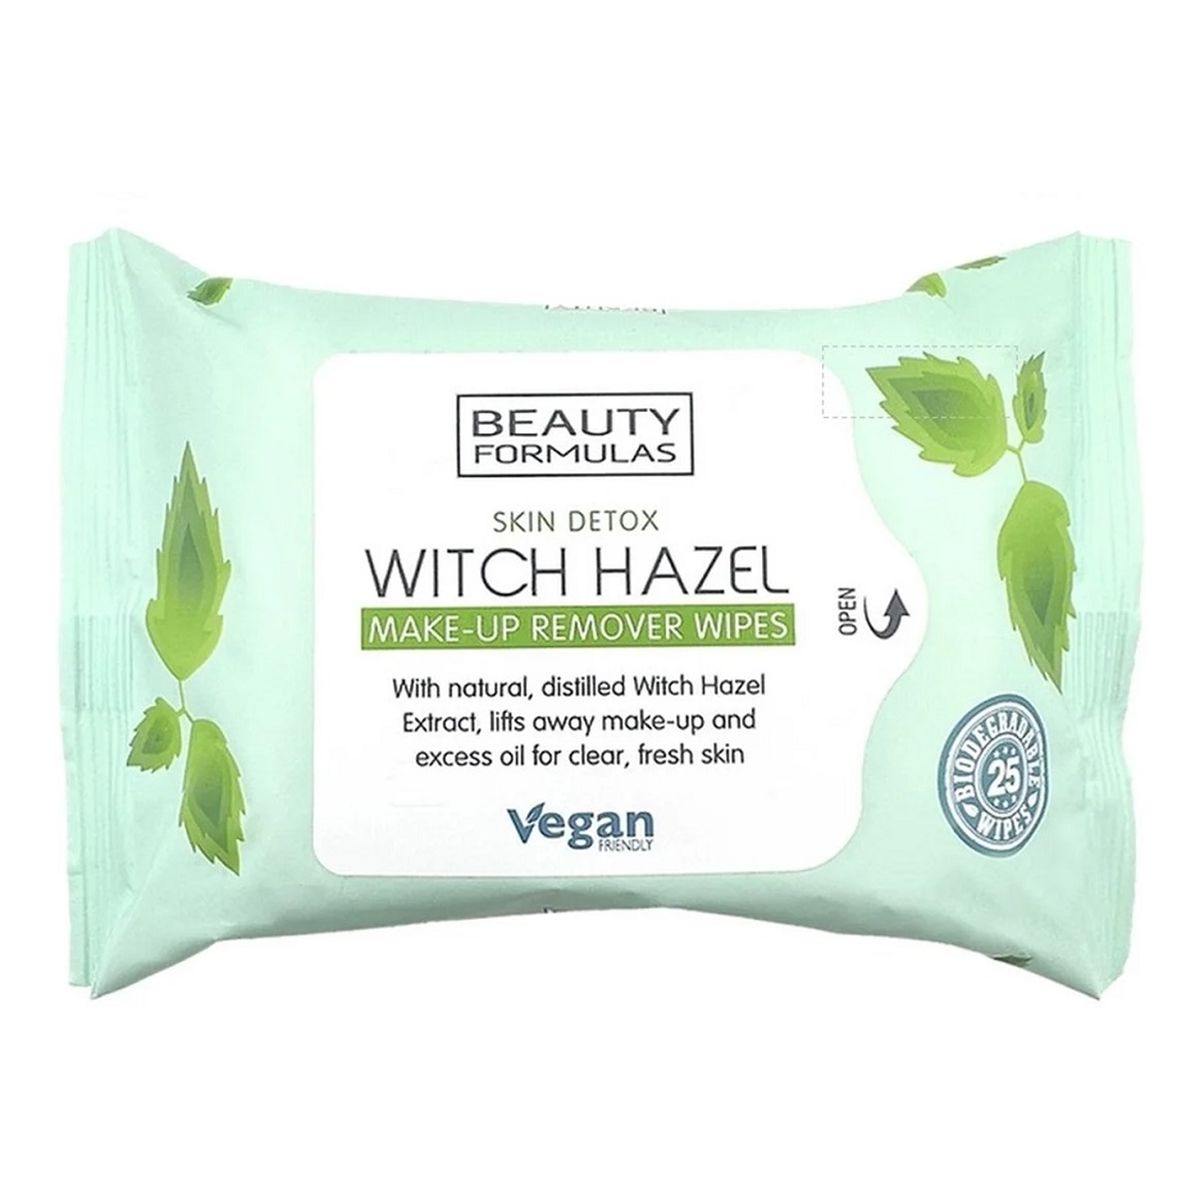 Beauty Formulas Witch hazel make-up remover wipes chusteczki do demakijażu 25szt